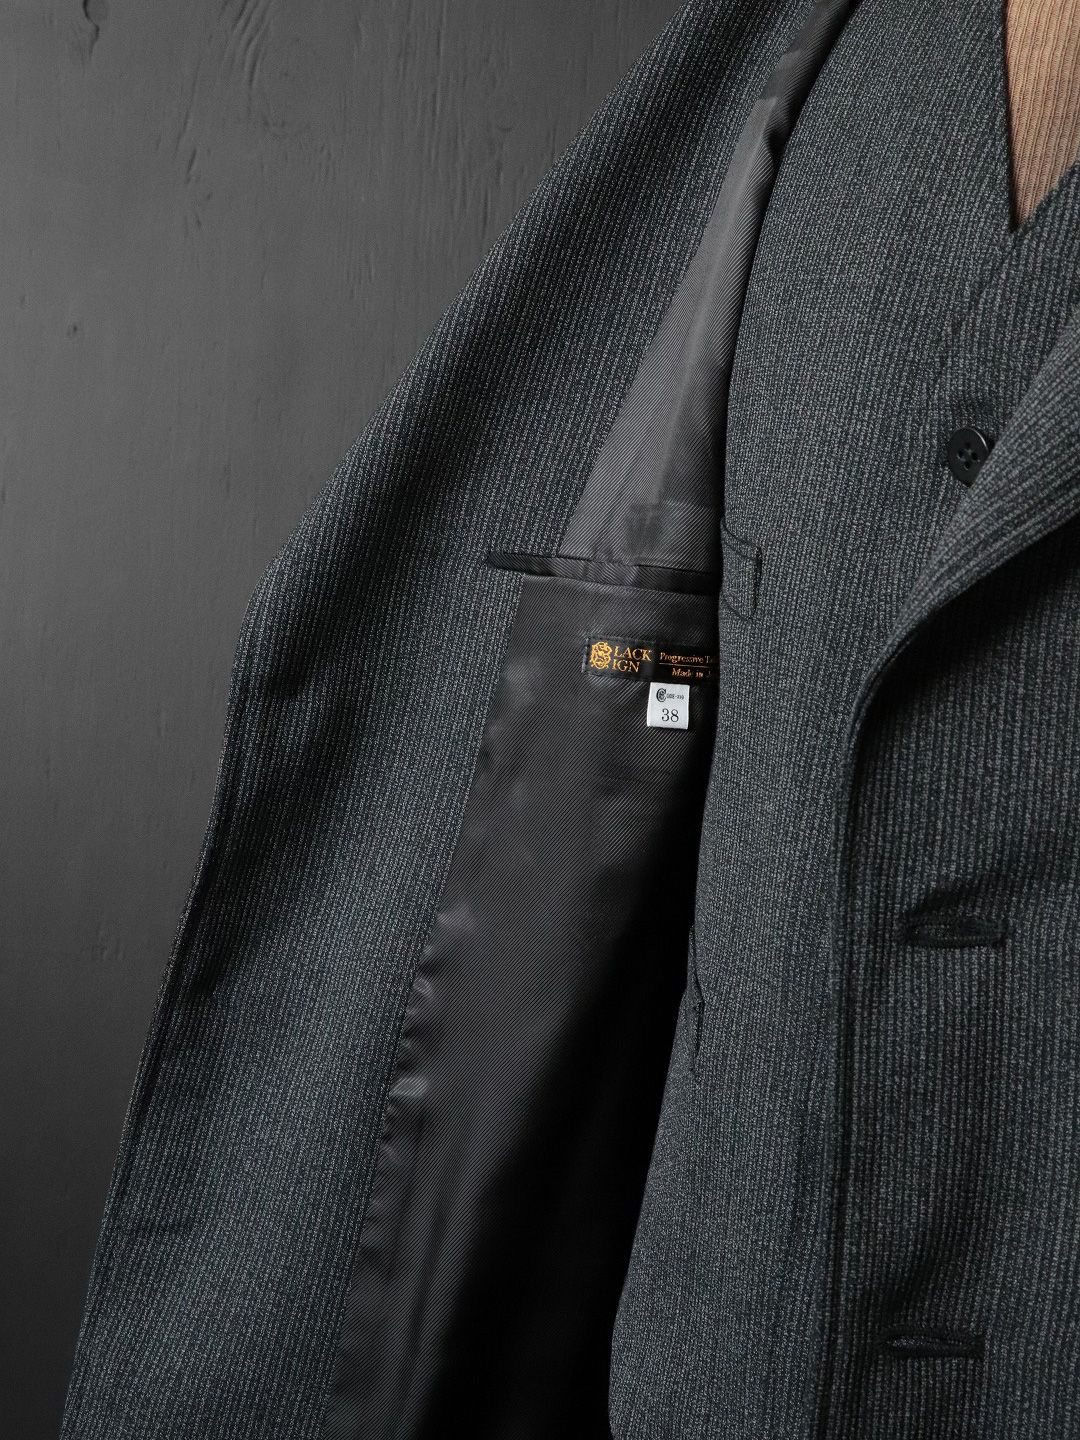 BLACK SIGN - 1930s Summer Wool Fog Stripe Sport Back Jacket